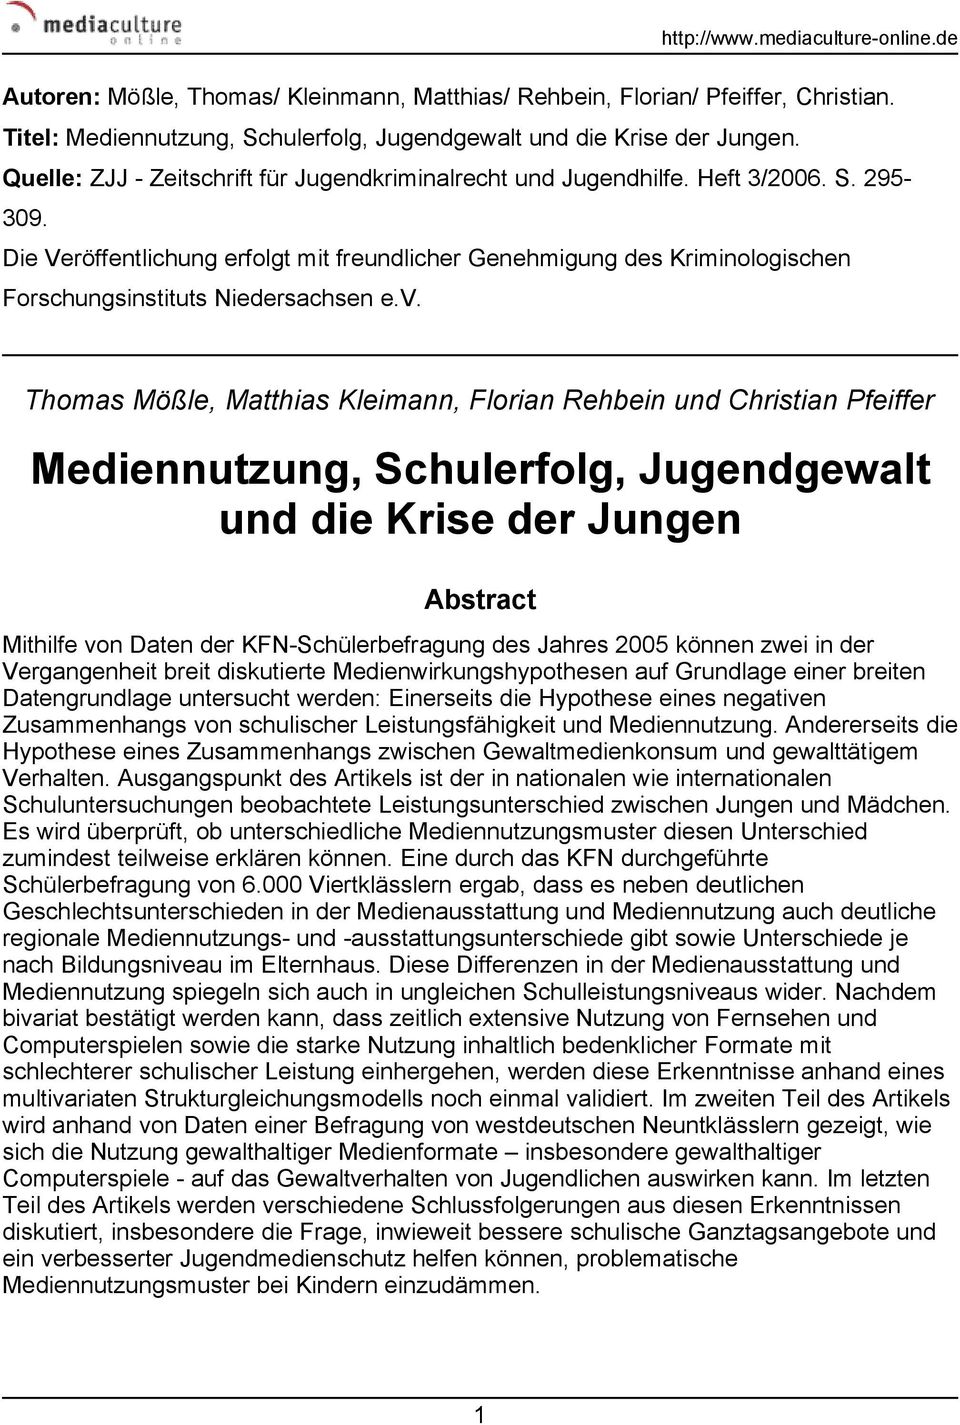 Die Veröffentlichung erfolgt mit freundlicher Genehmigung des Kriminologischen Forschungsinstituts Niedersachsen e.v.